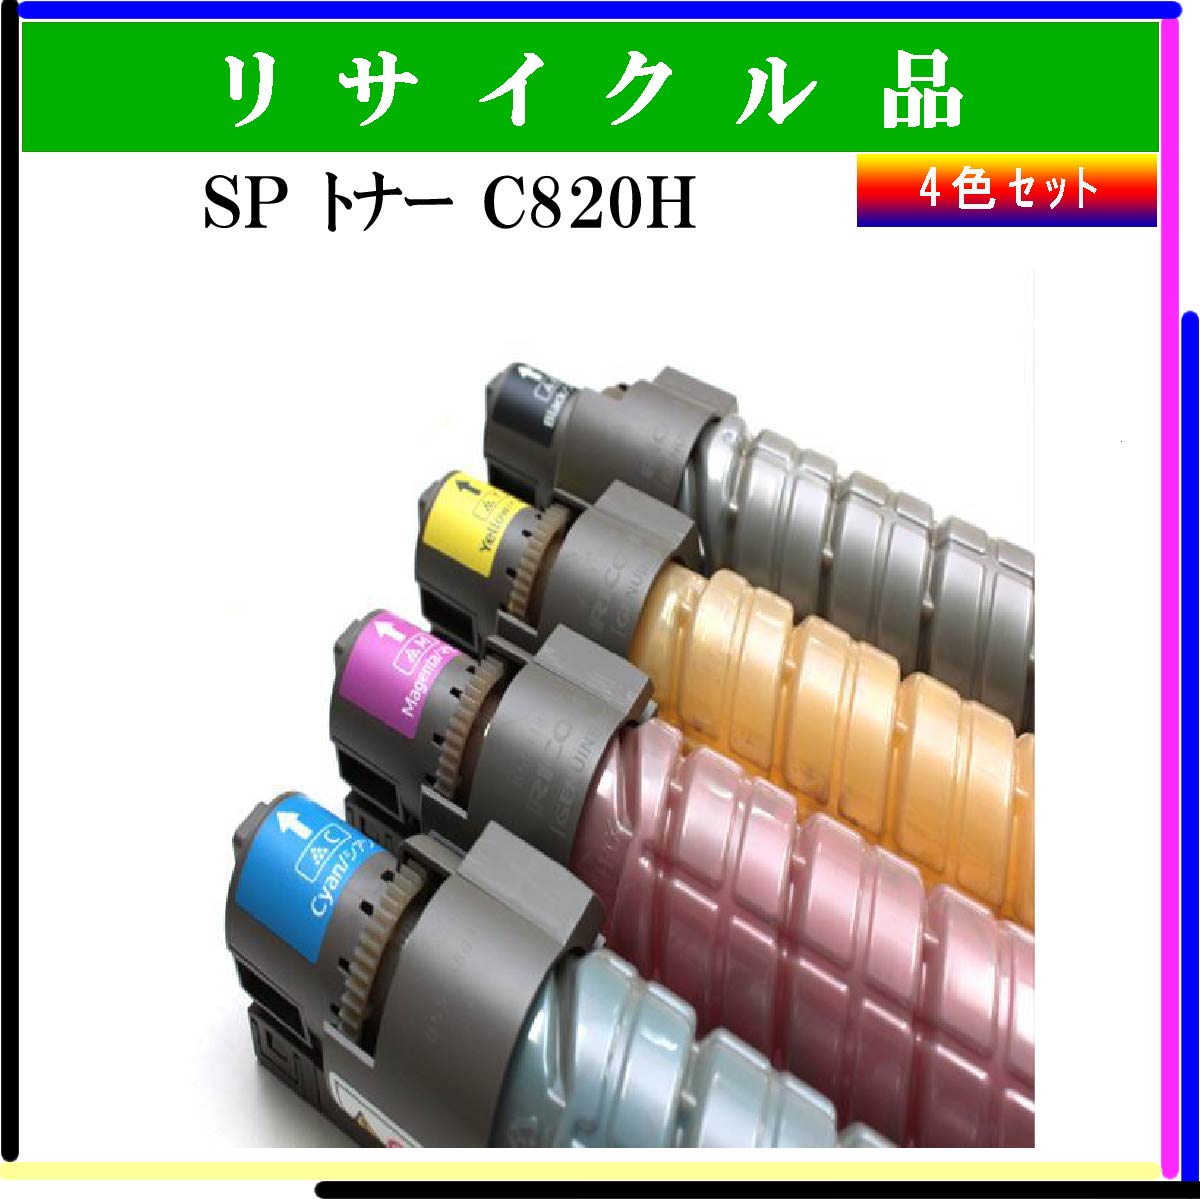 SP ﾄﾅｰ C820H (4色ｾｯﾄ)